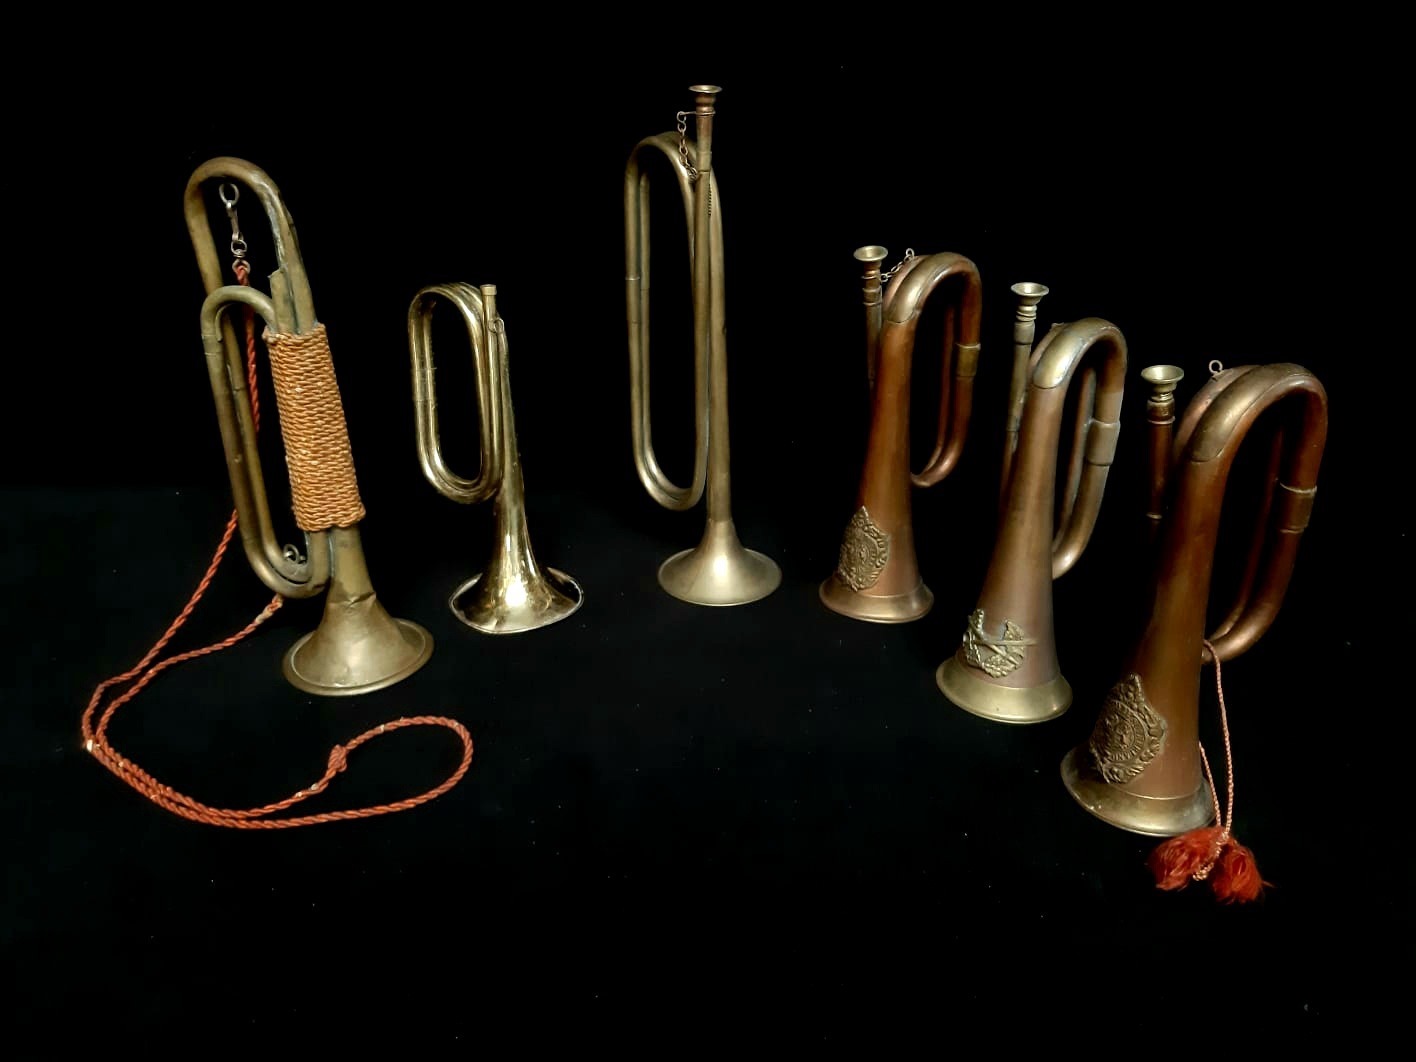 Muziek instrumenten, trompetten, trompet, decor, decoratie, te huur, huren